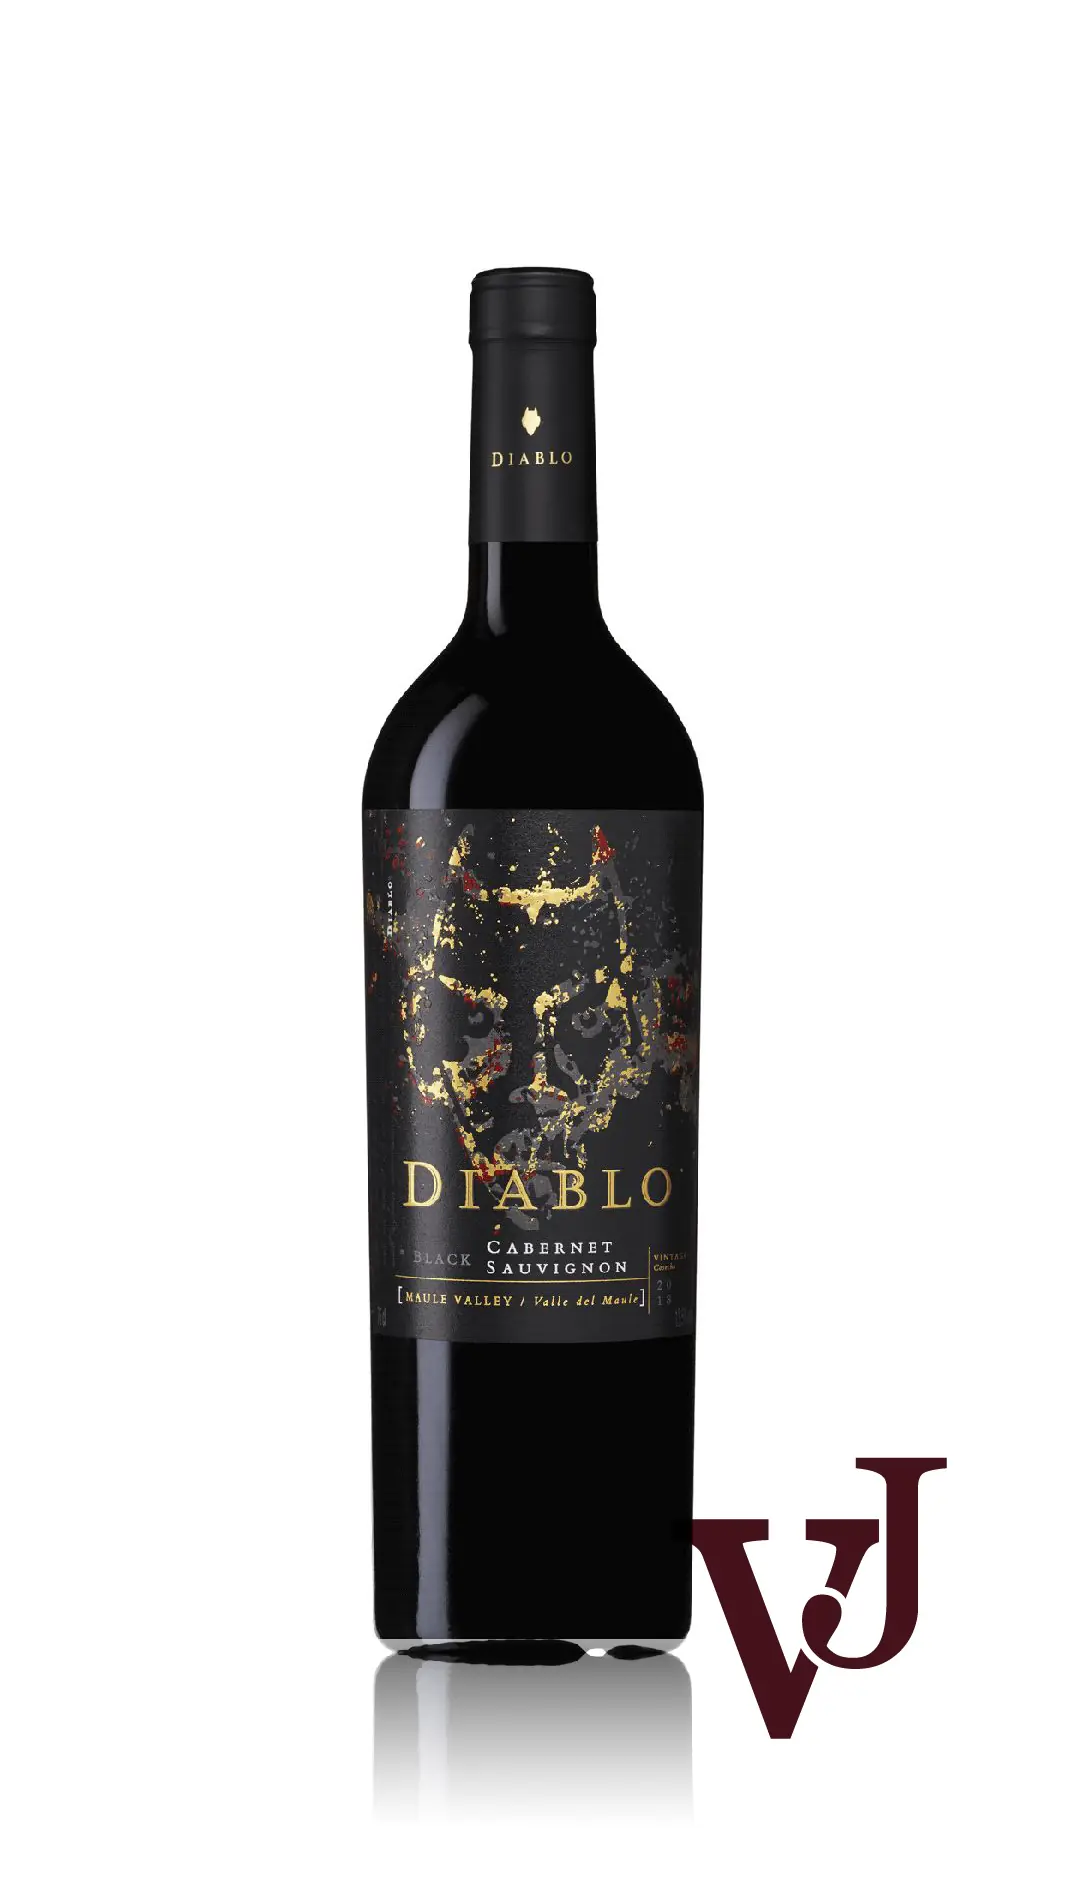 Rött Vin - Diablo Black artikel nummer 7027501 från producenten Concha y Toro från Chile - Vinjournalen.se